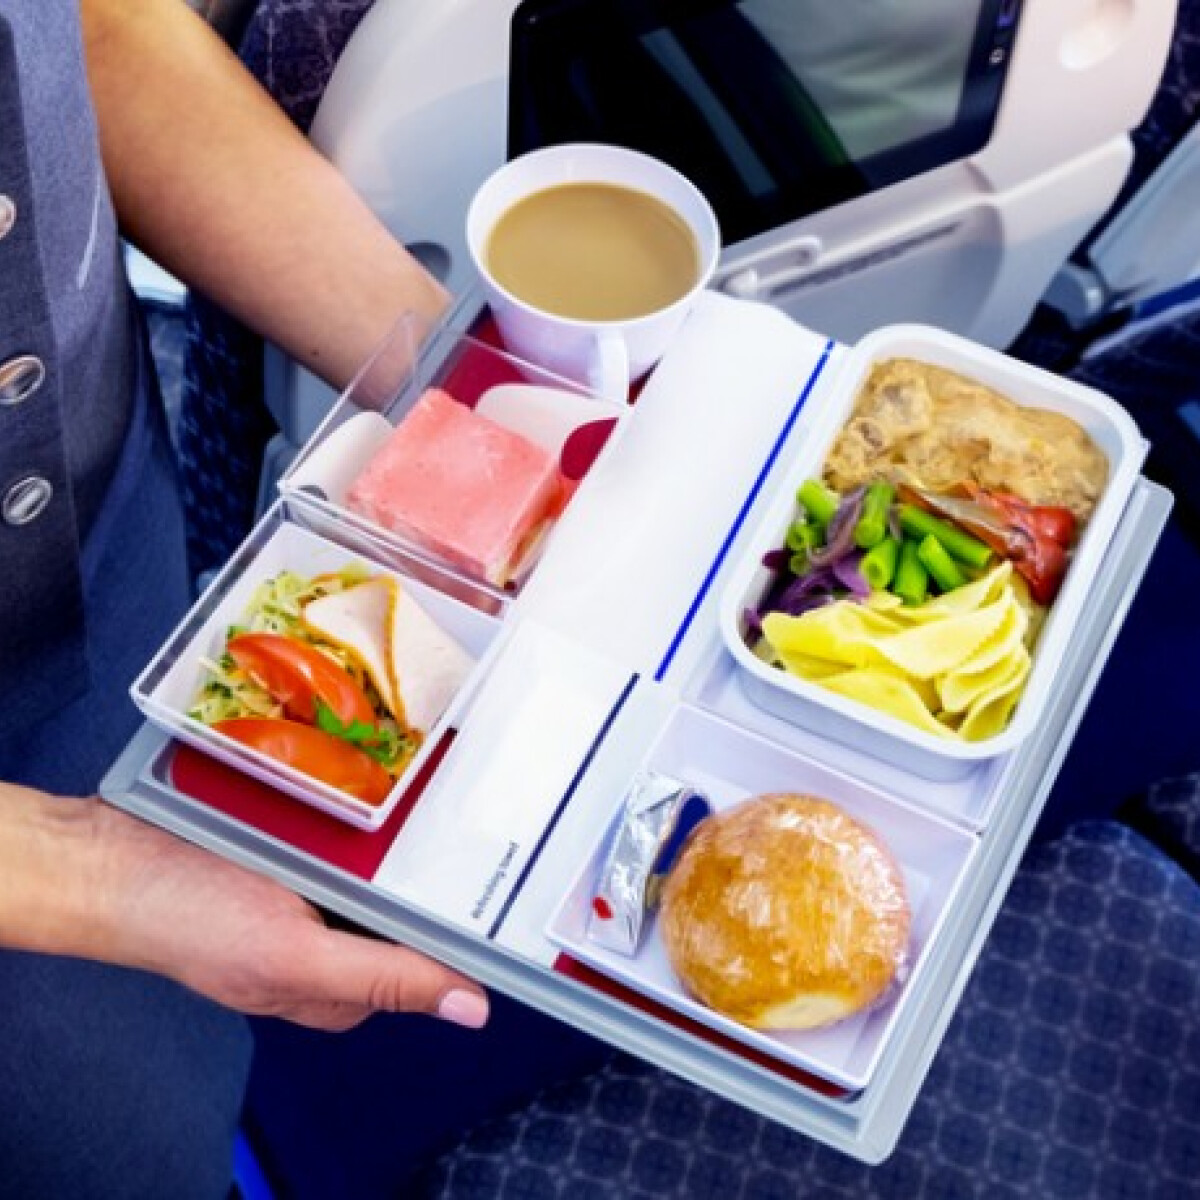 10 érdekesség a repülőgépen felszolgált ételekről